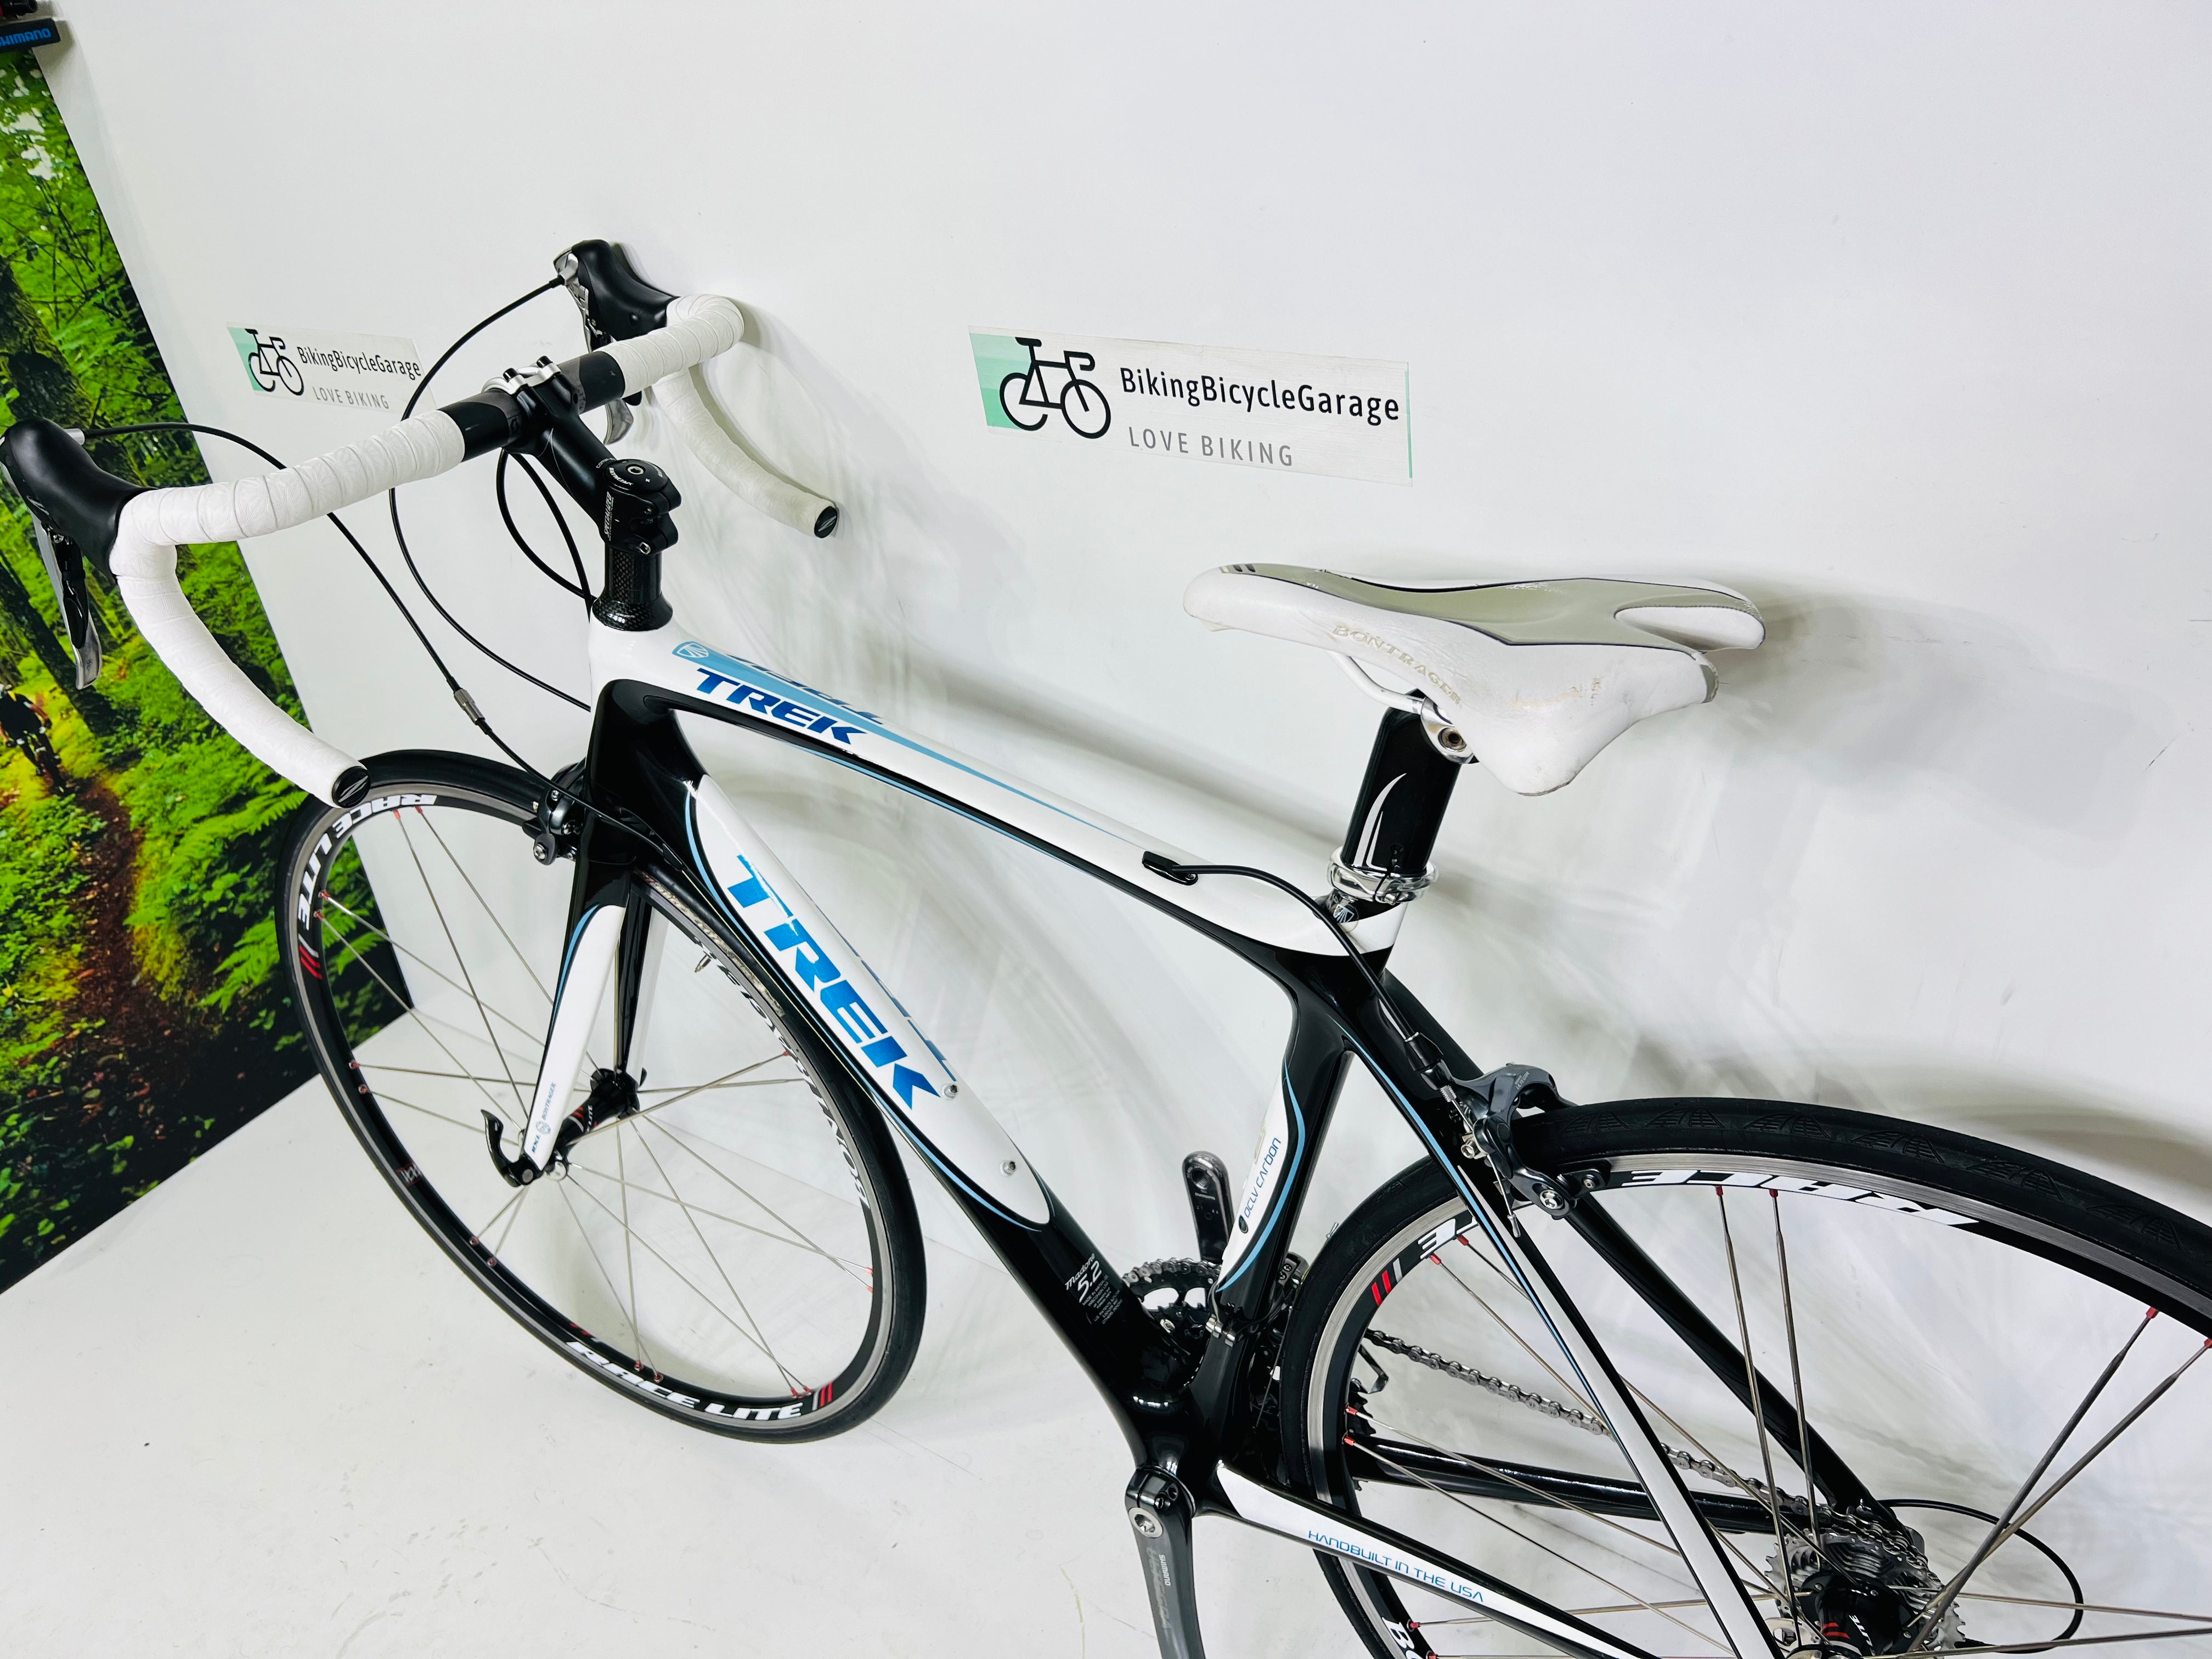 Trek Madone 5.2 WSD Carbon Fiber Road Bike- 52cm